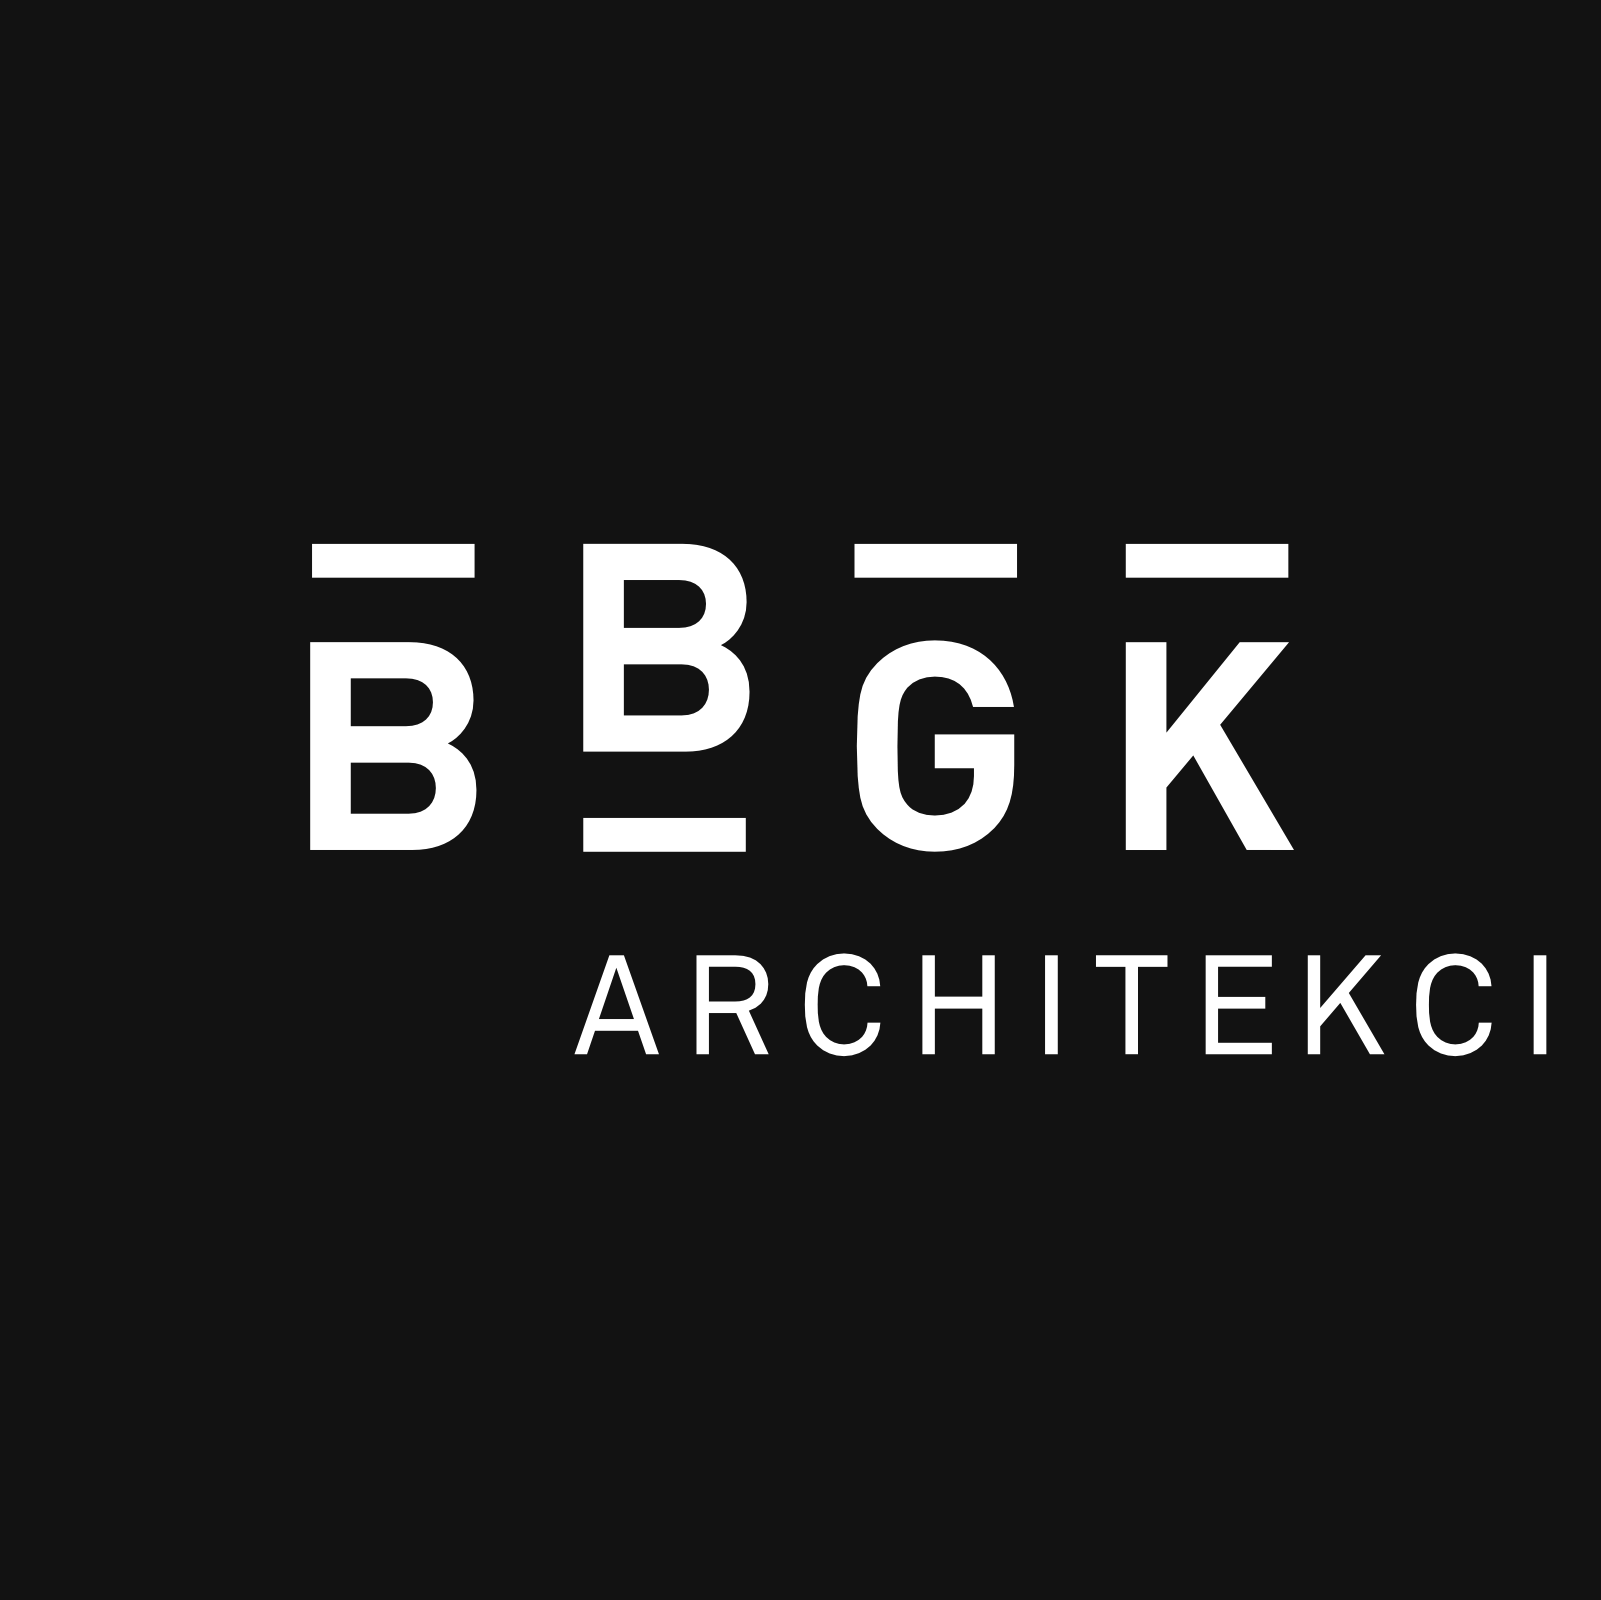 BBGK Architekci